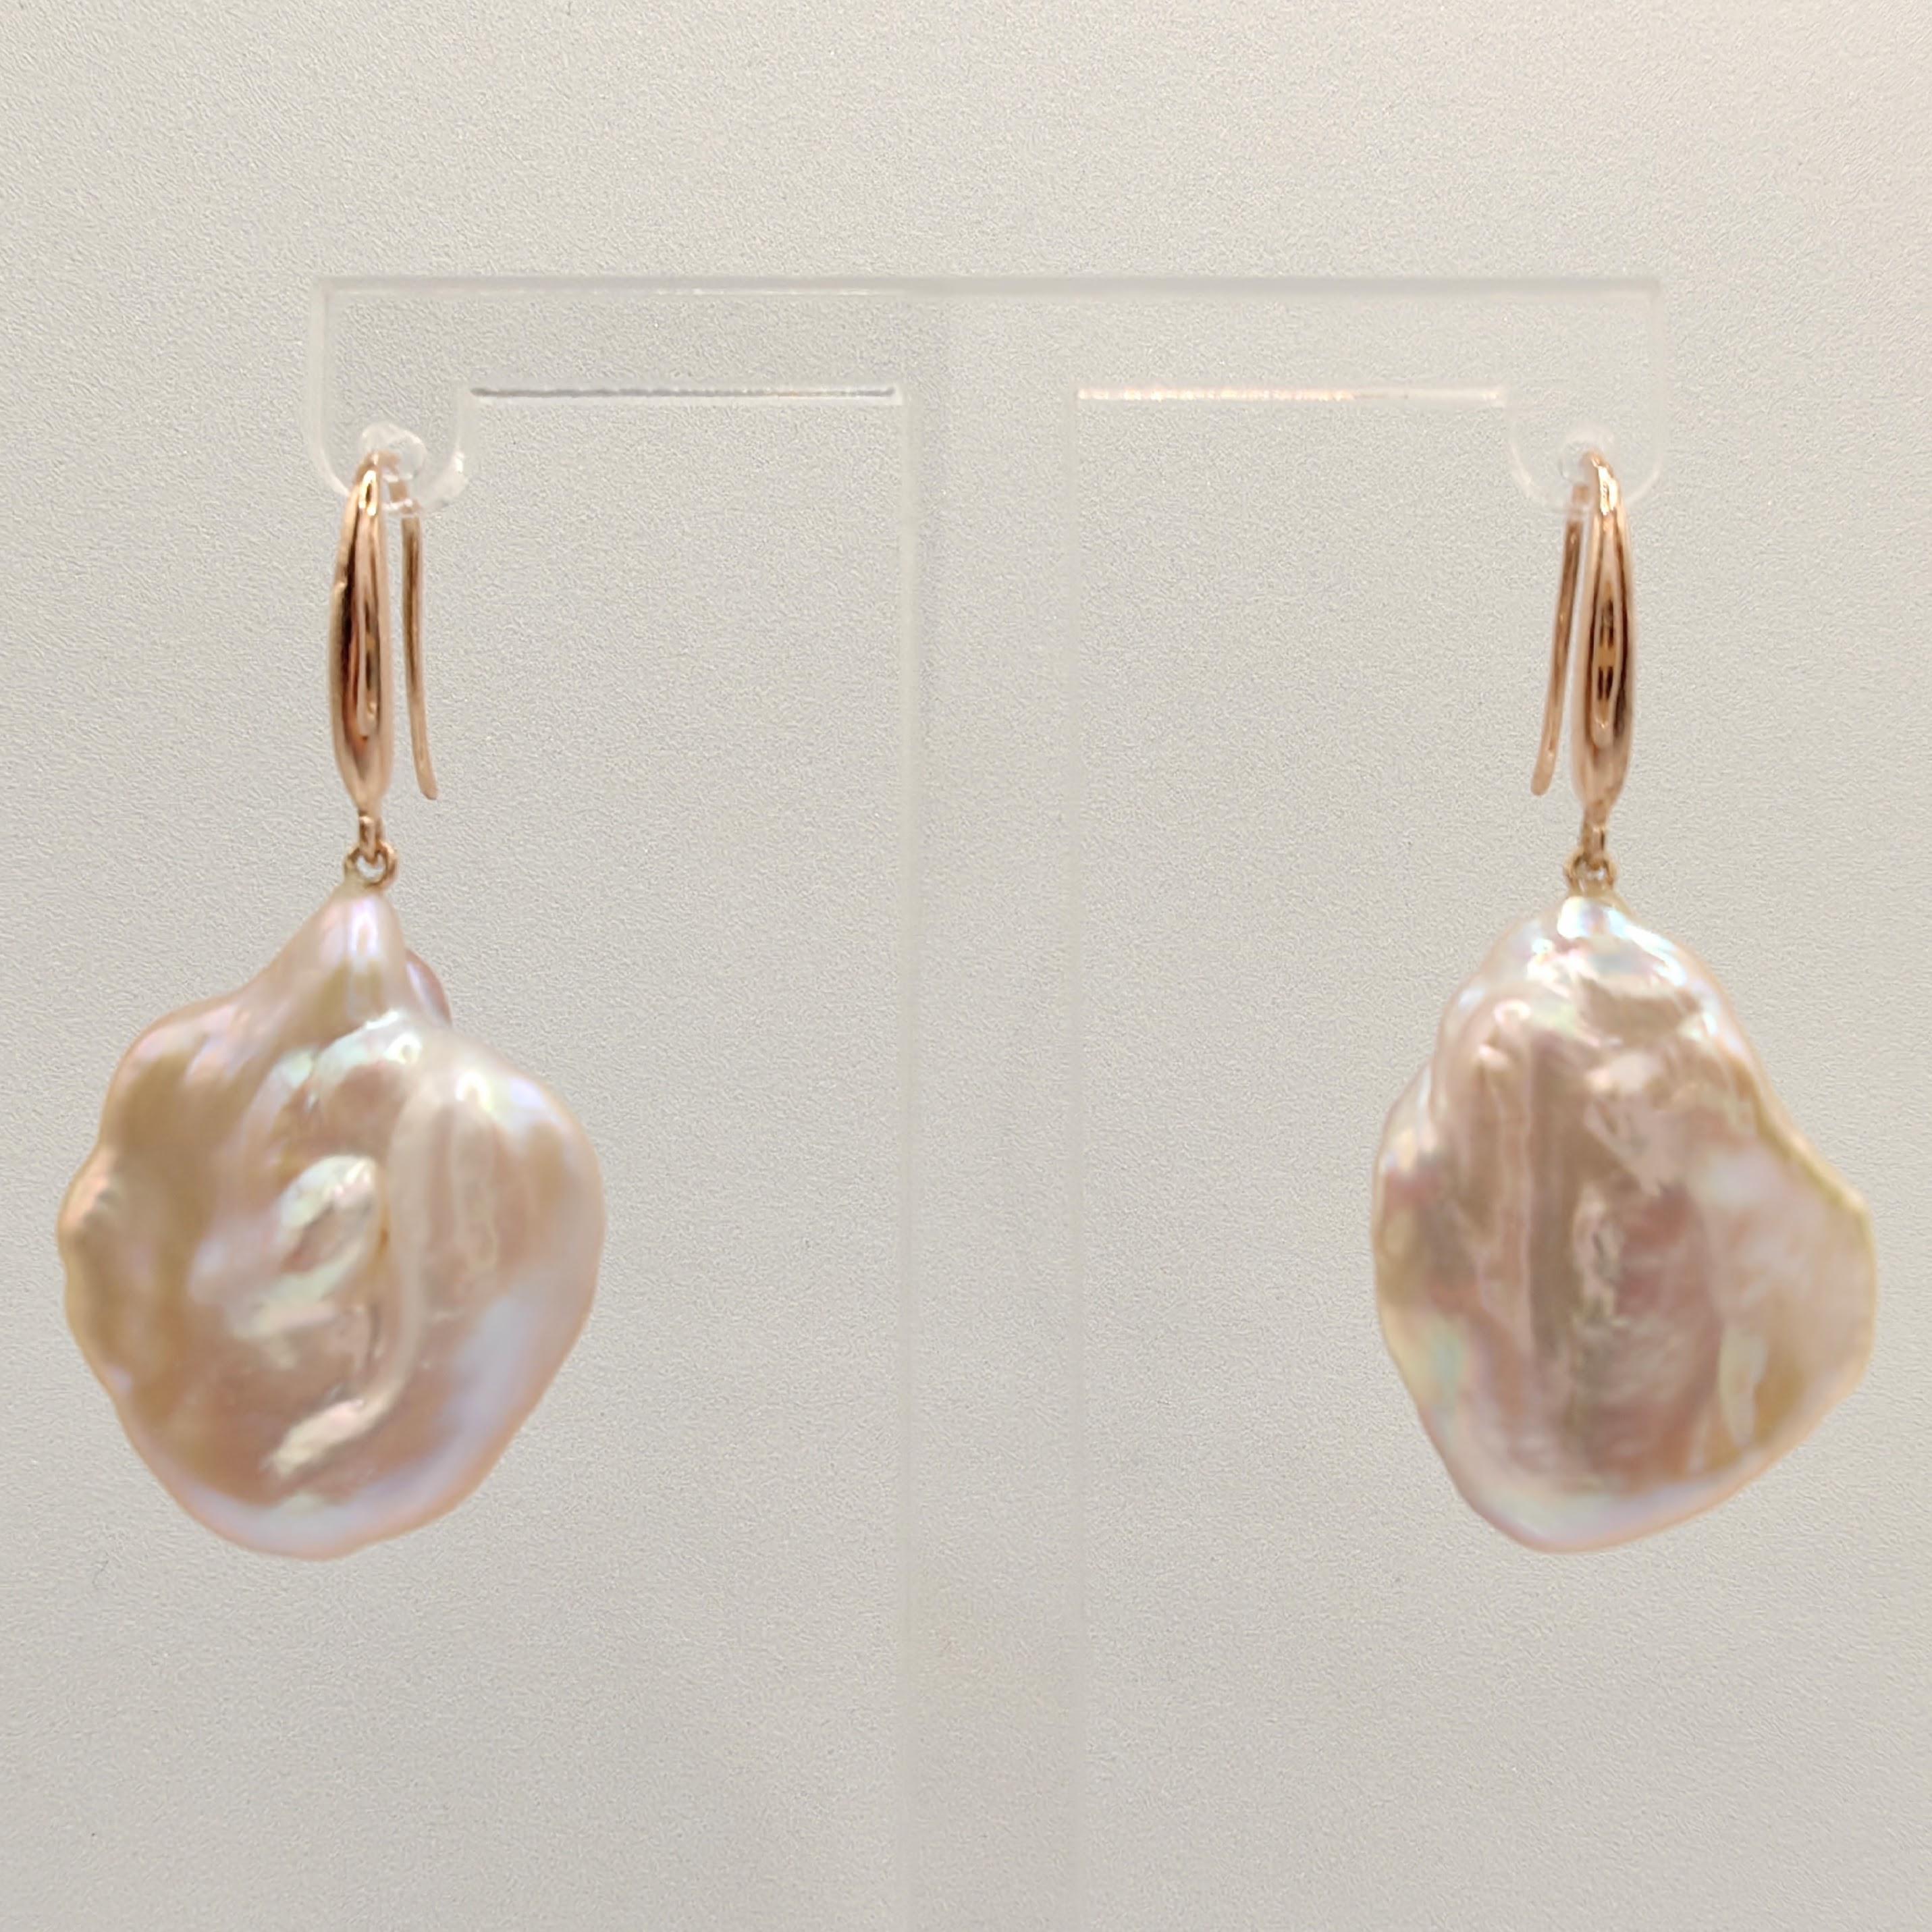 Rehaussez votre look avec le charme éthéré de nos boucles d'oreilles pendantes en perles Keshi rose-pêche, une célébration de l'élégance délicate et de la beauté naturelle. Ces boucles d'oreilles exquises sont composées de perles de culture d'eau